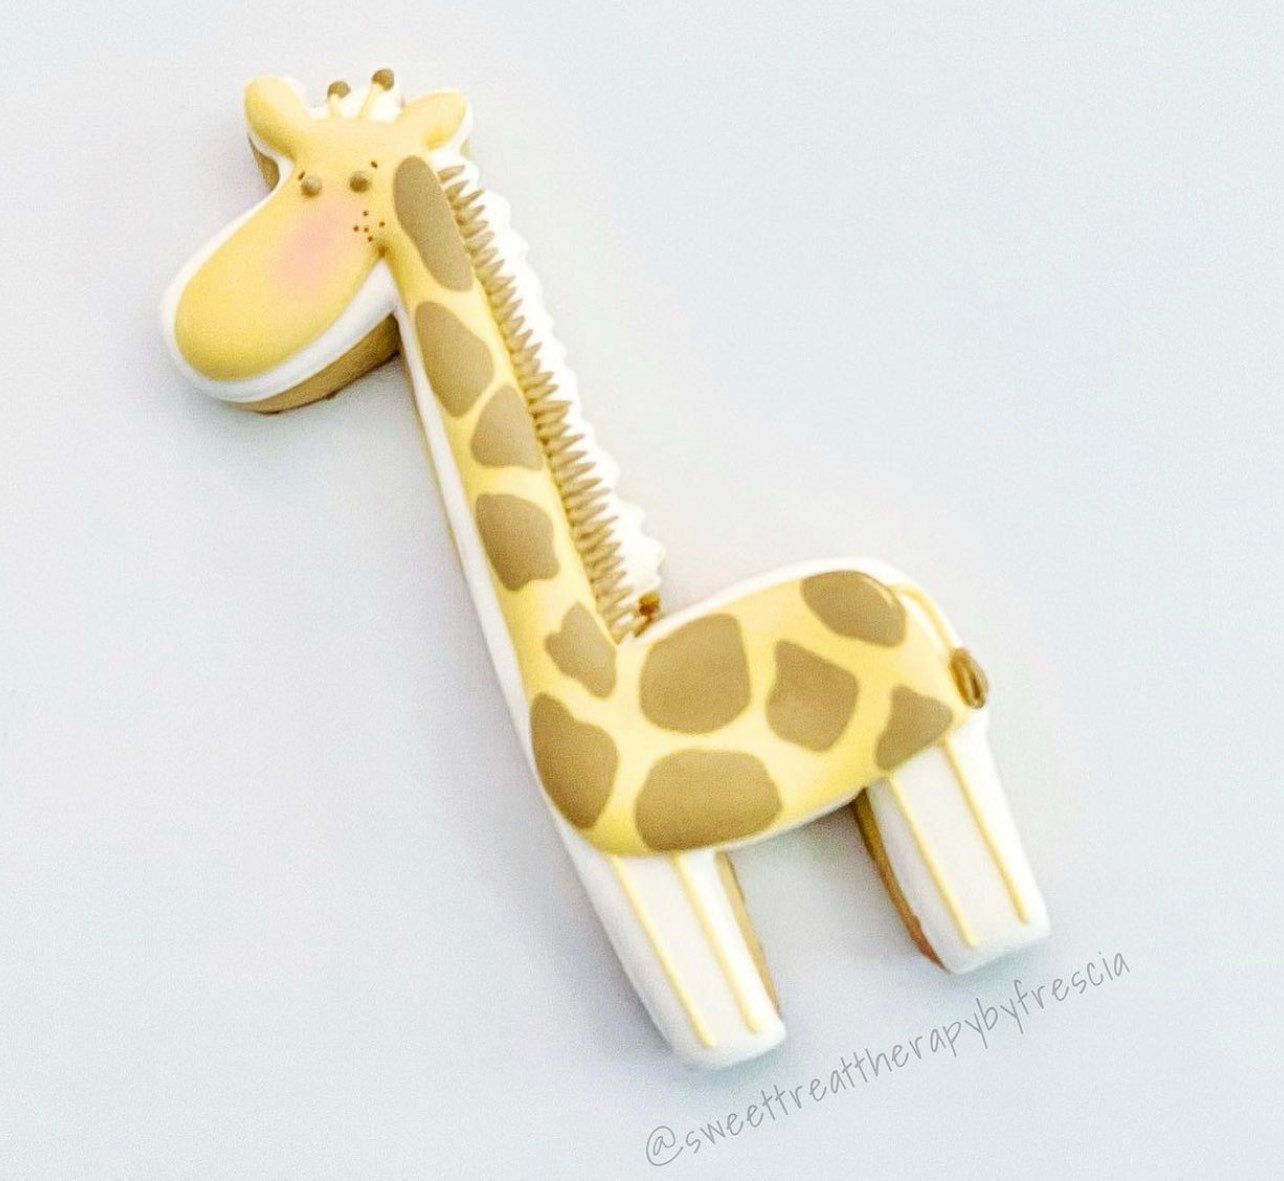 Giraffe cookie cutter finished cutter- The Frescia giraffe